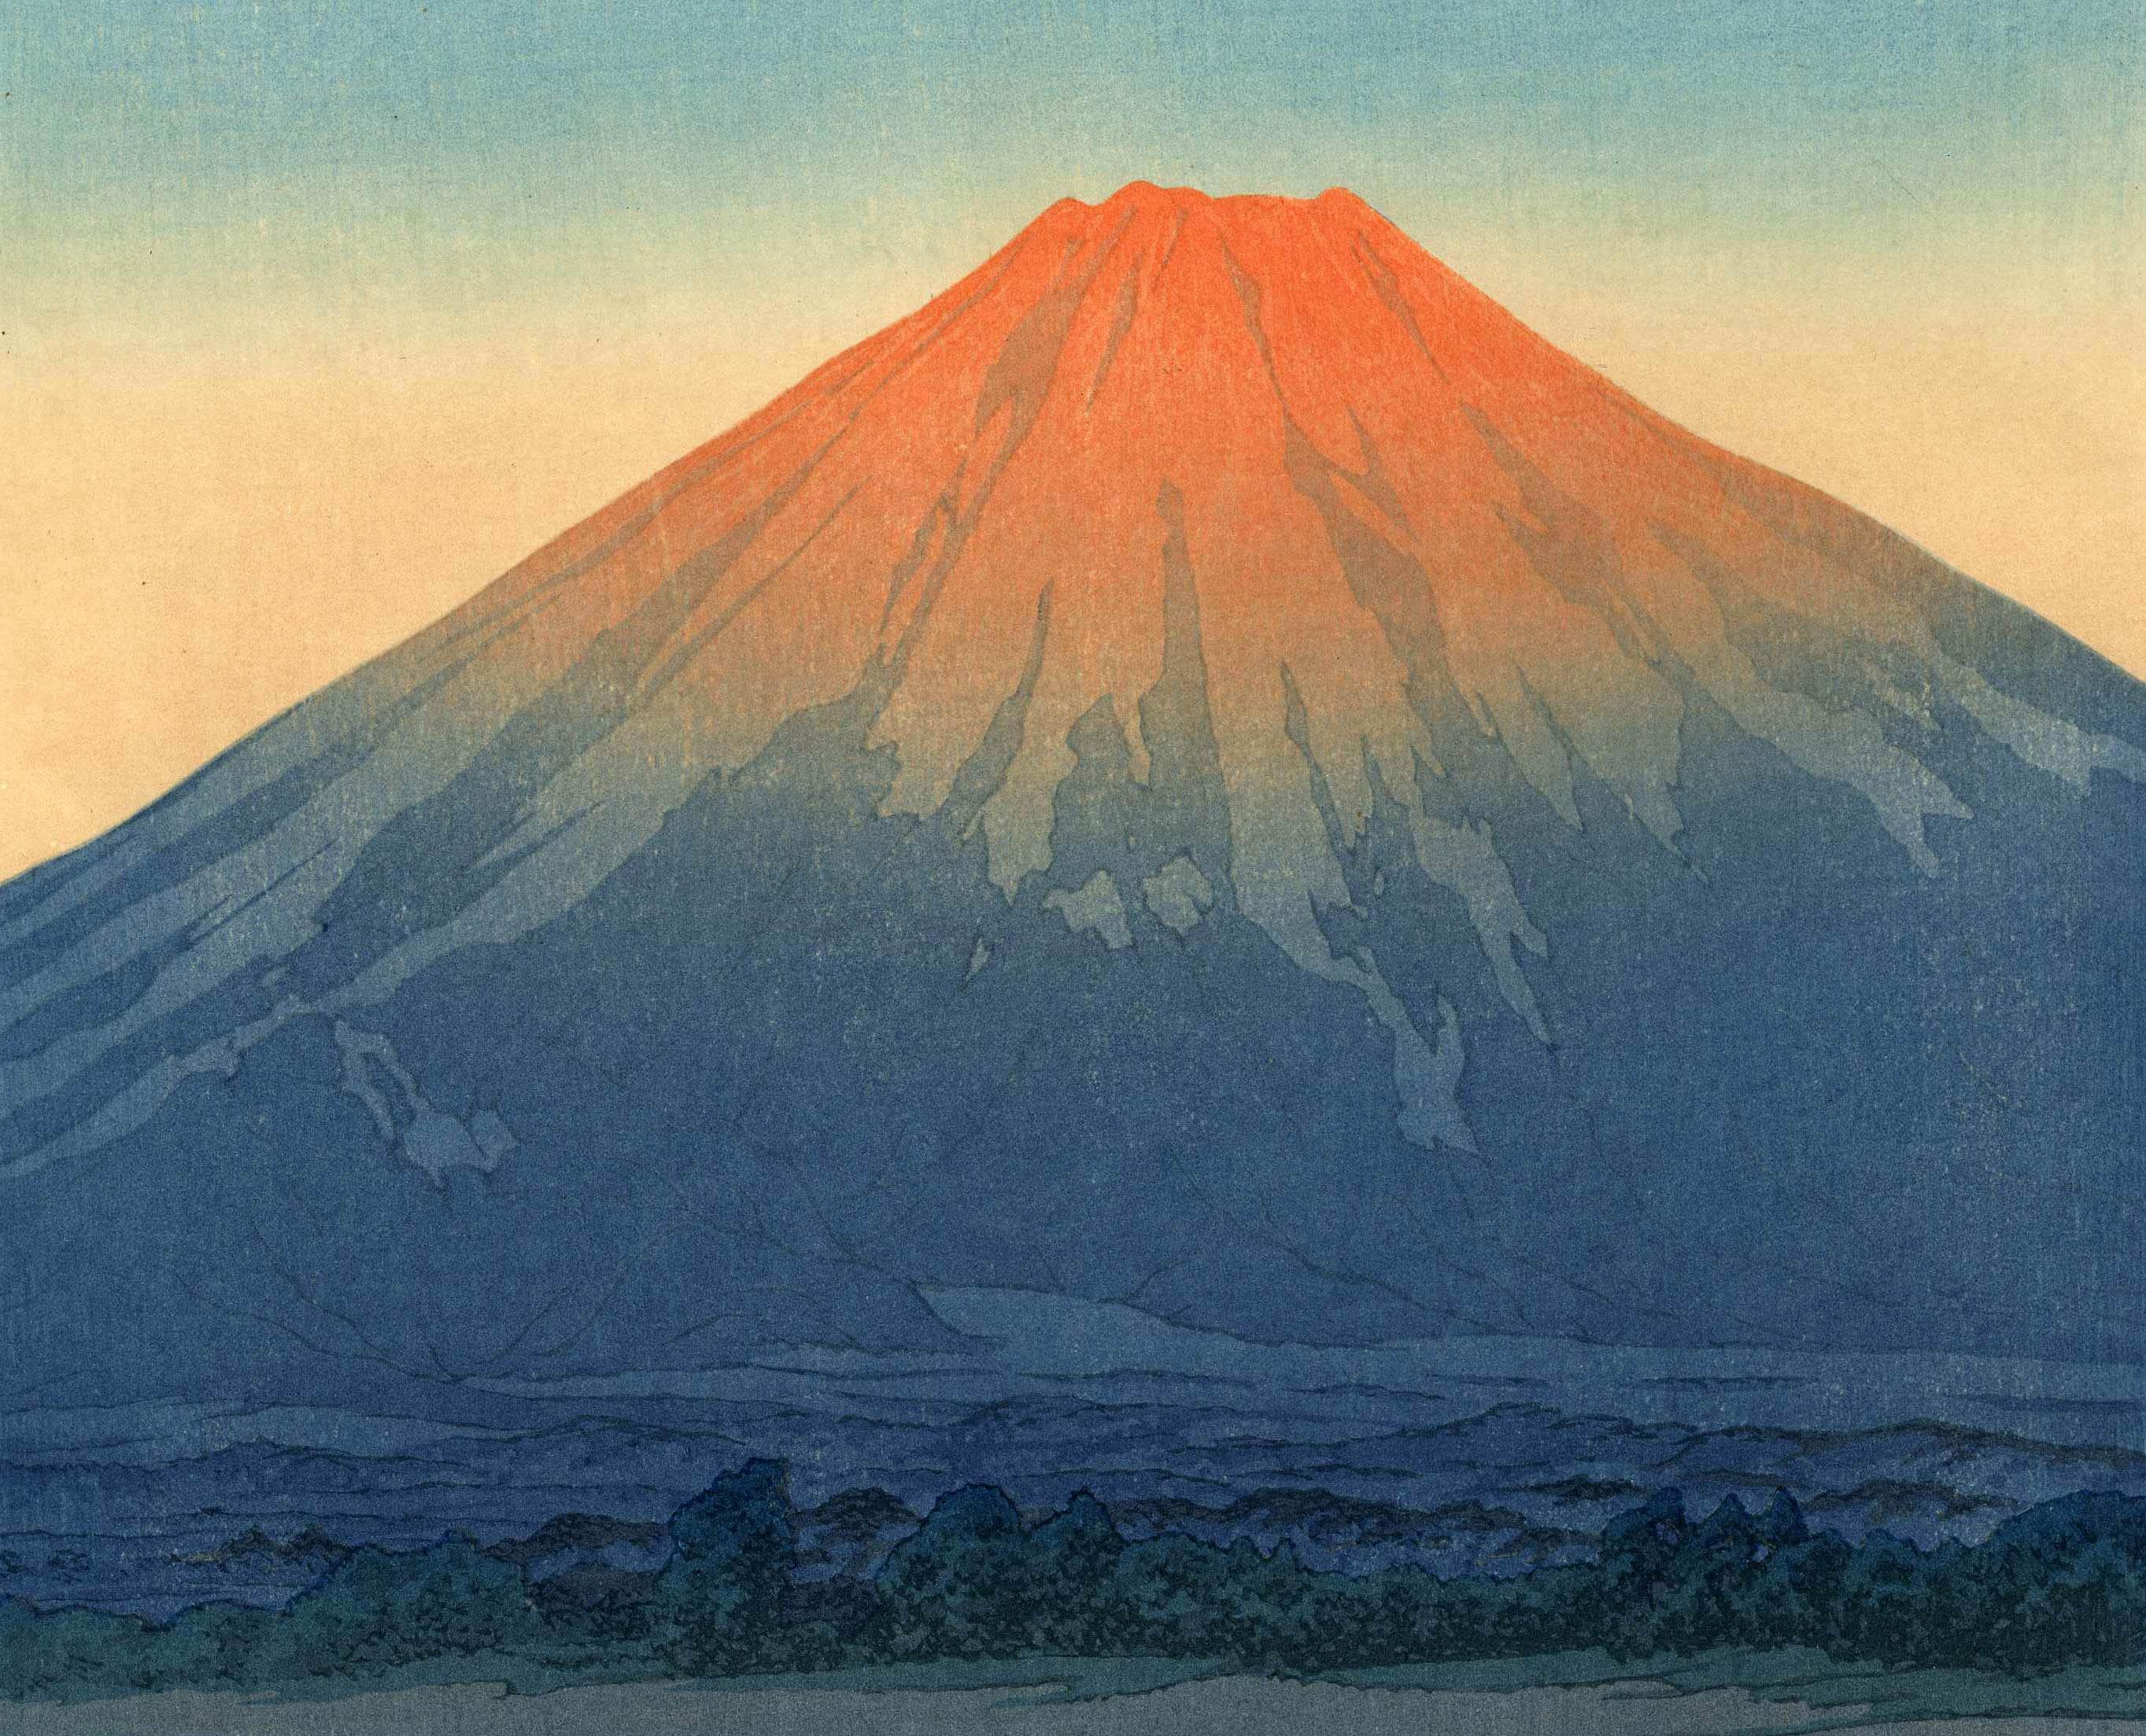 Tagesanbruch über dem Yamanaka-See
Farbholzschnitt, 1931
Herausgegeben von der Watanabe Color Print Co.
Watanabe-Siegel 